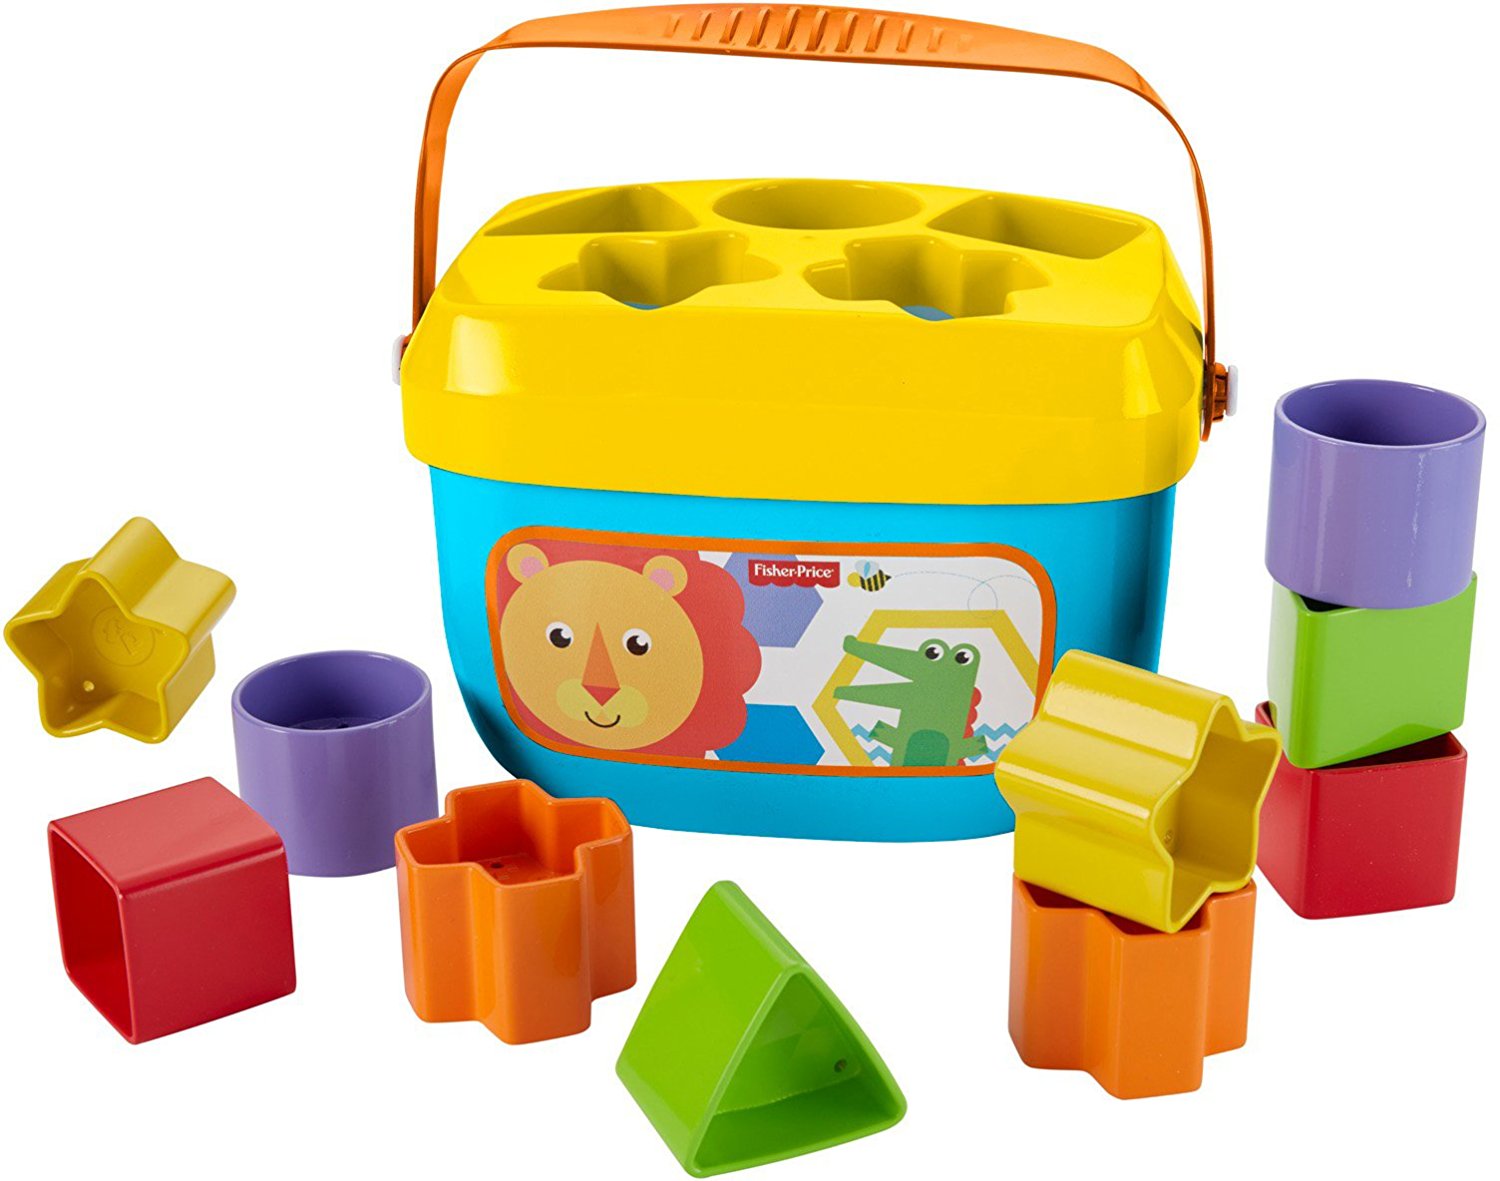 soft blocks for infants